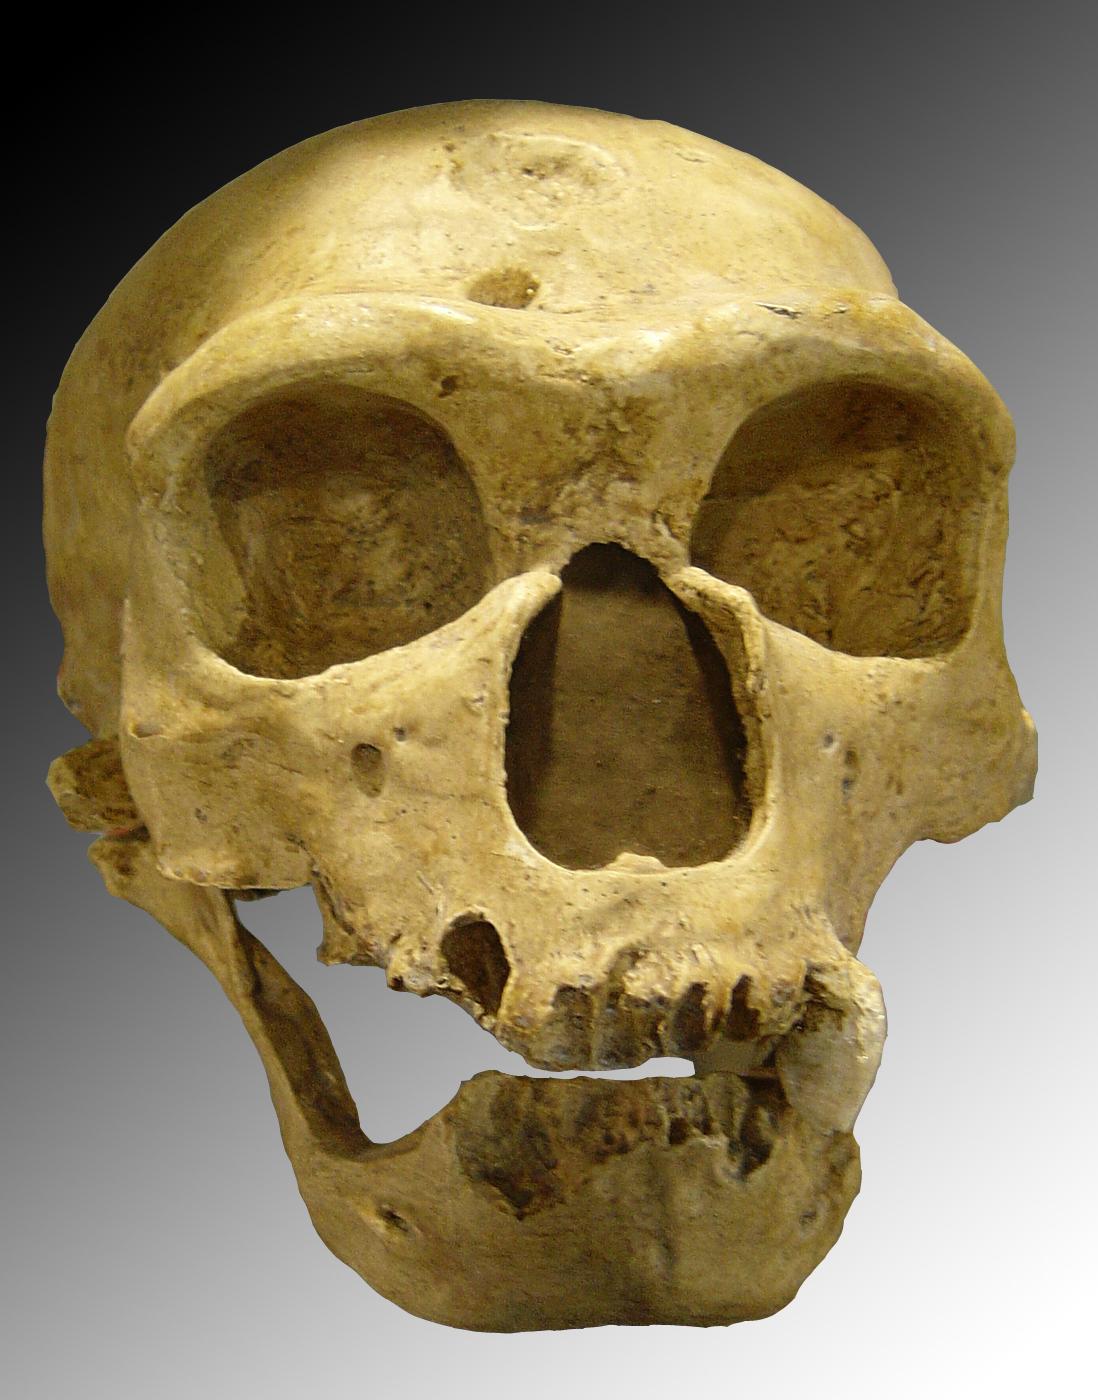 https://upload.wikimedia.org/wikipedia/commons/e/e0/Homo_sapiens_neanderthalensis.jpg